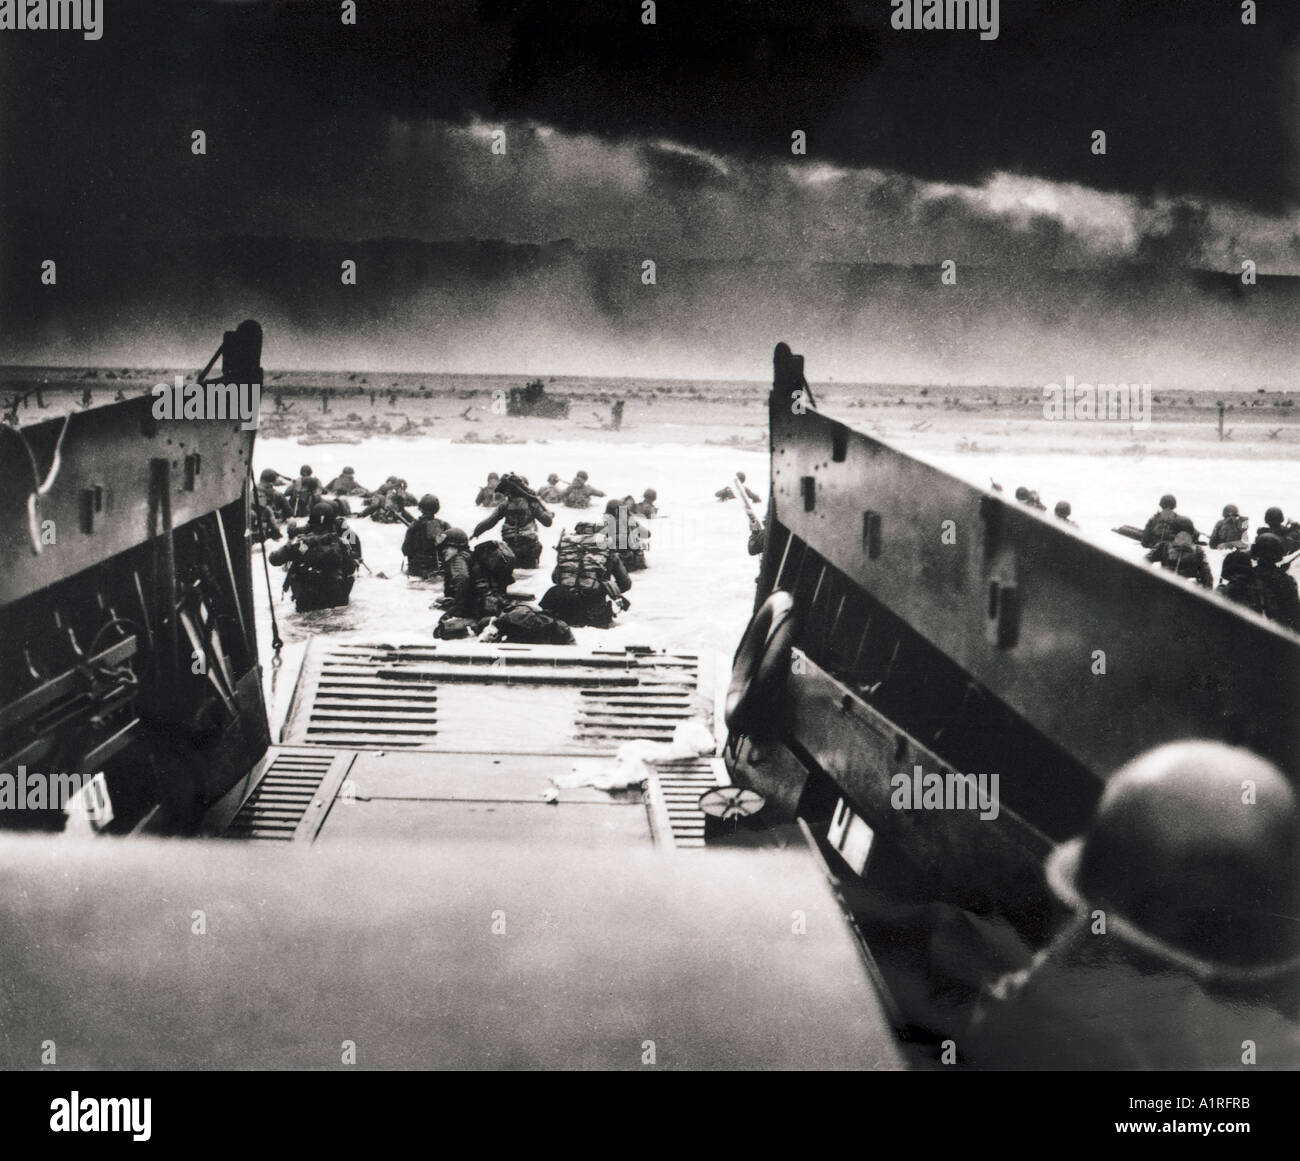 Strand Frankreich des zweiten Weltkriegs zwei Krieg Welt B W U S amerikanischen D-Day Landung Angriff Besetzung tapfere Männer Wasser landen Stockfoto